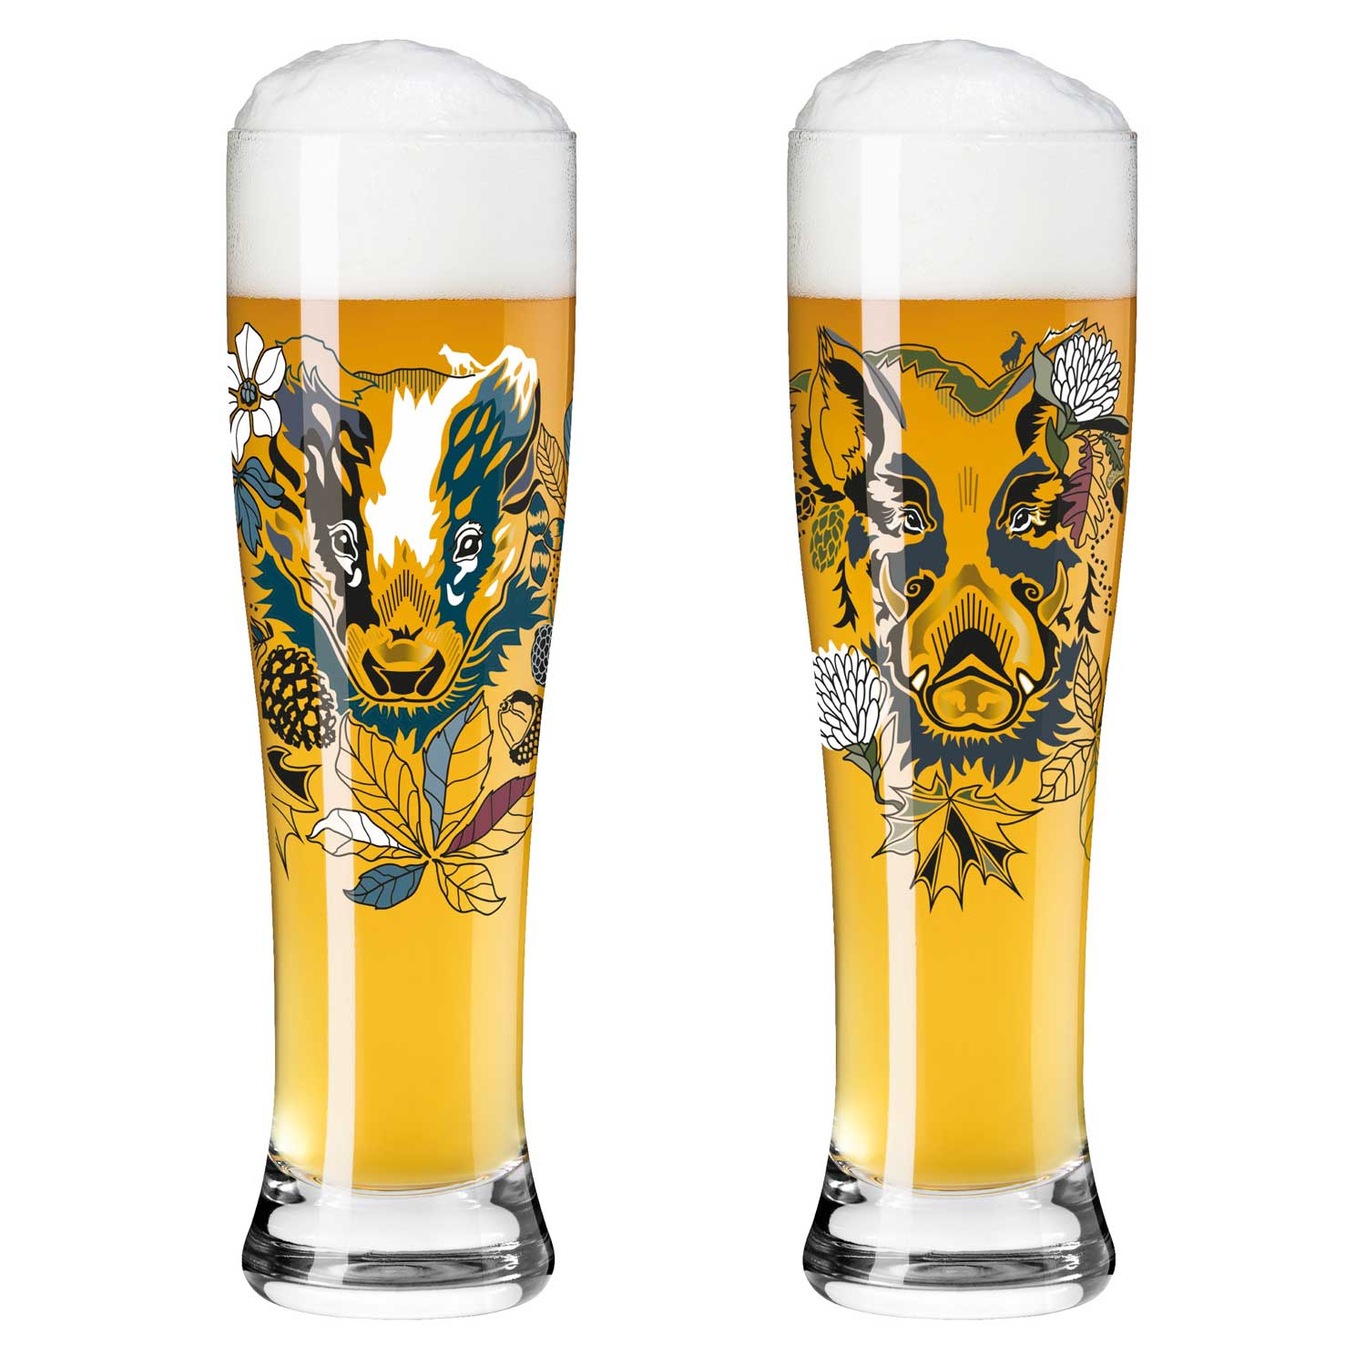 Brauchzeit Beer Glass 2-pack, #7 & 8